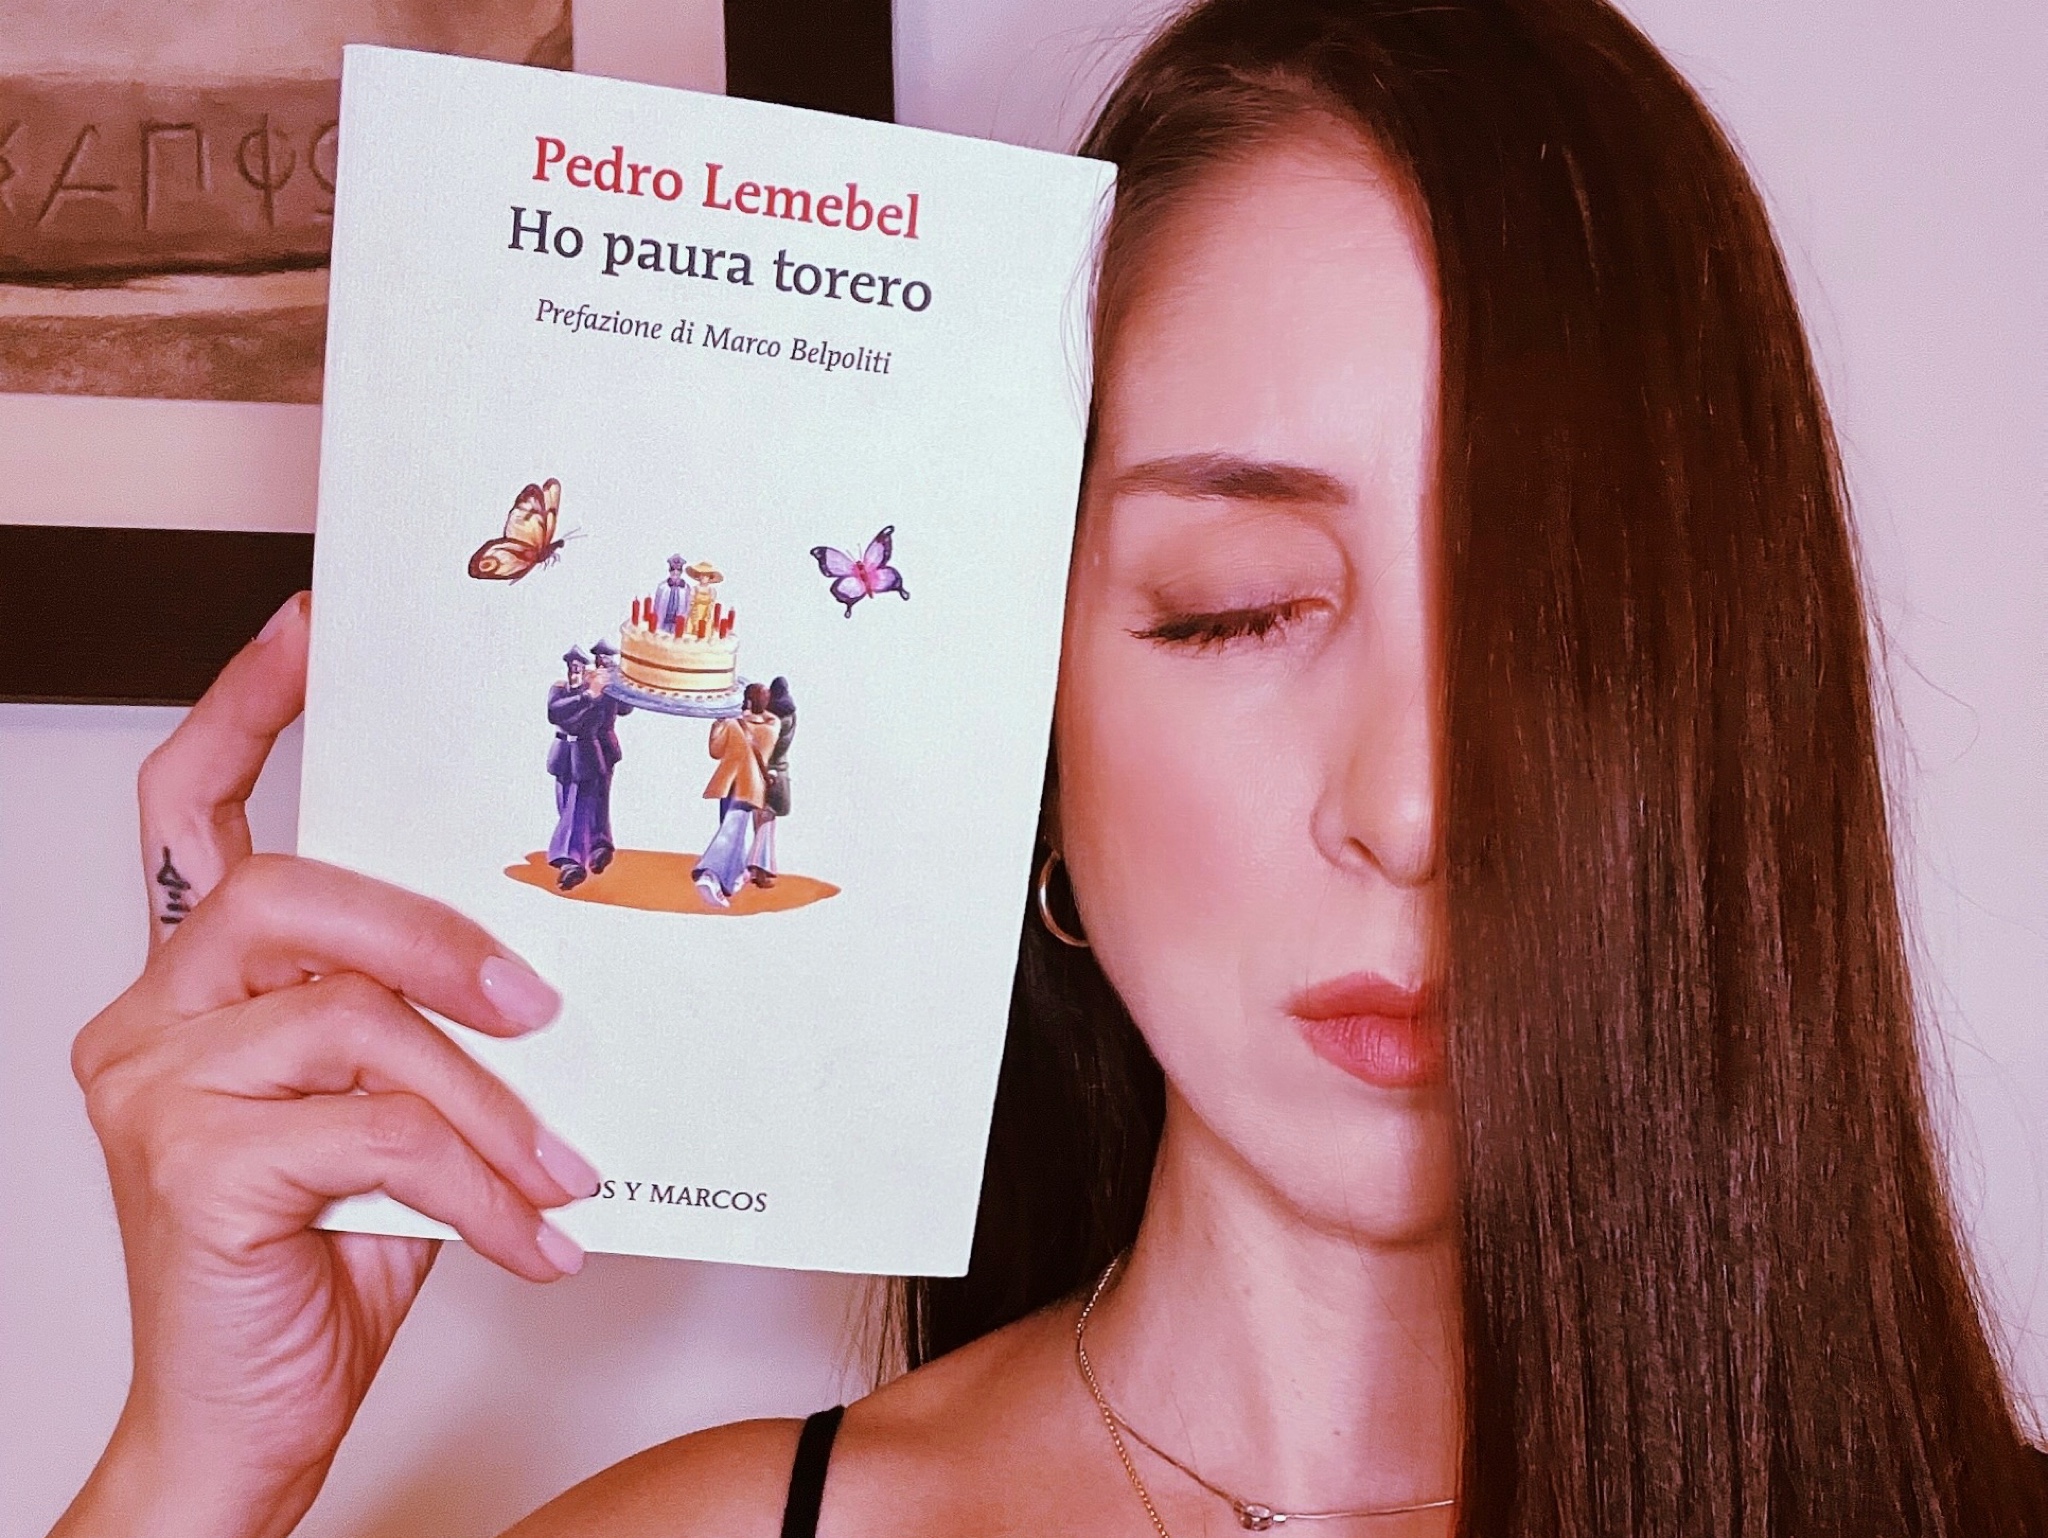 HO PAURA TORERO - Pedro Lemebel - Marilena's Journal - Books and Stories